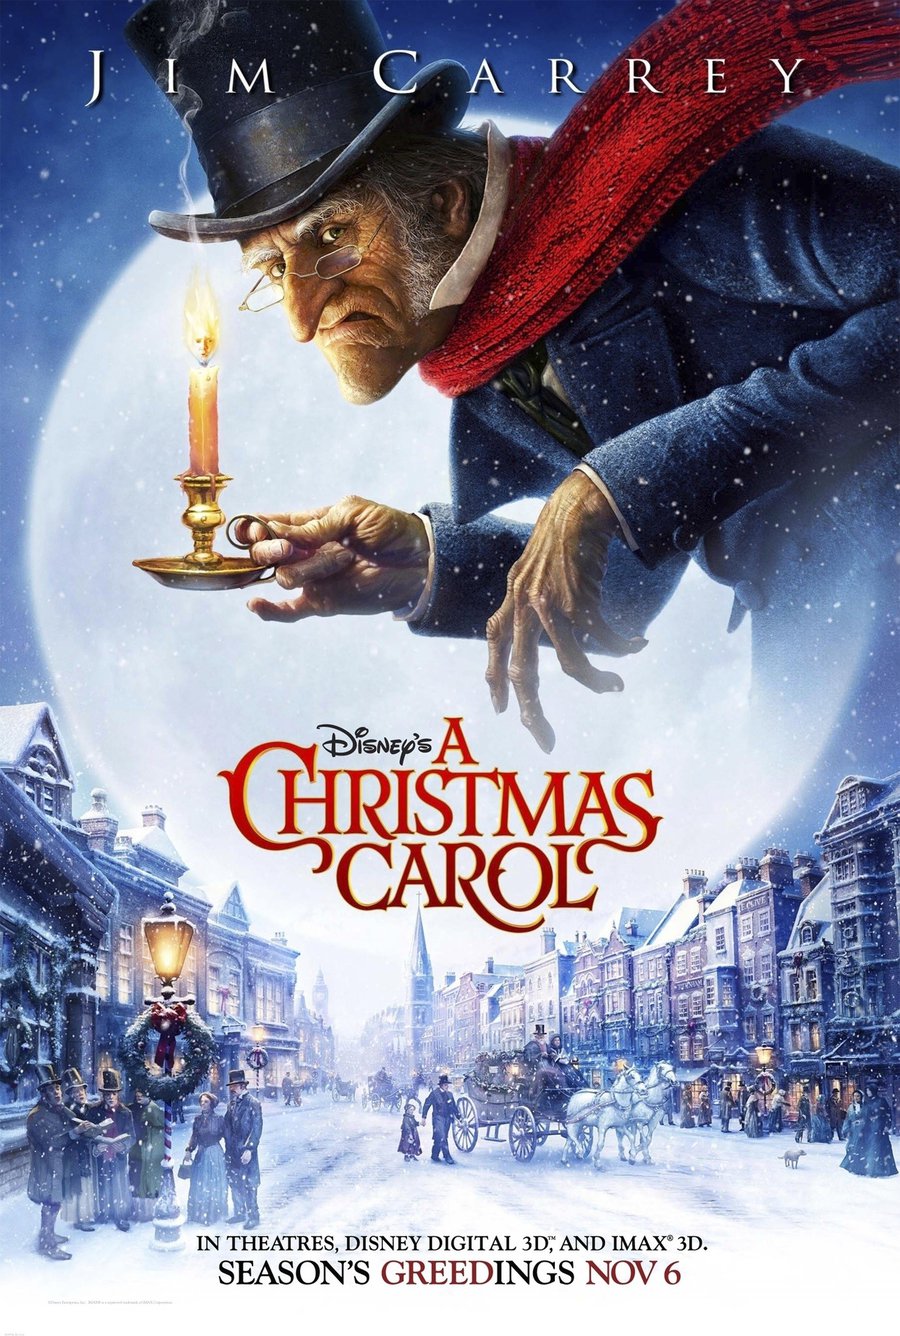 Disney's A Christmas Carol (2009)